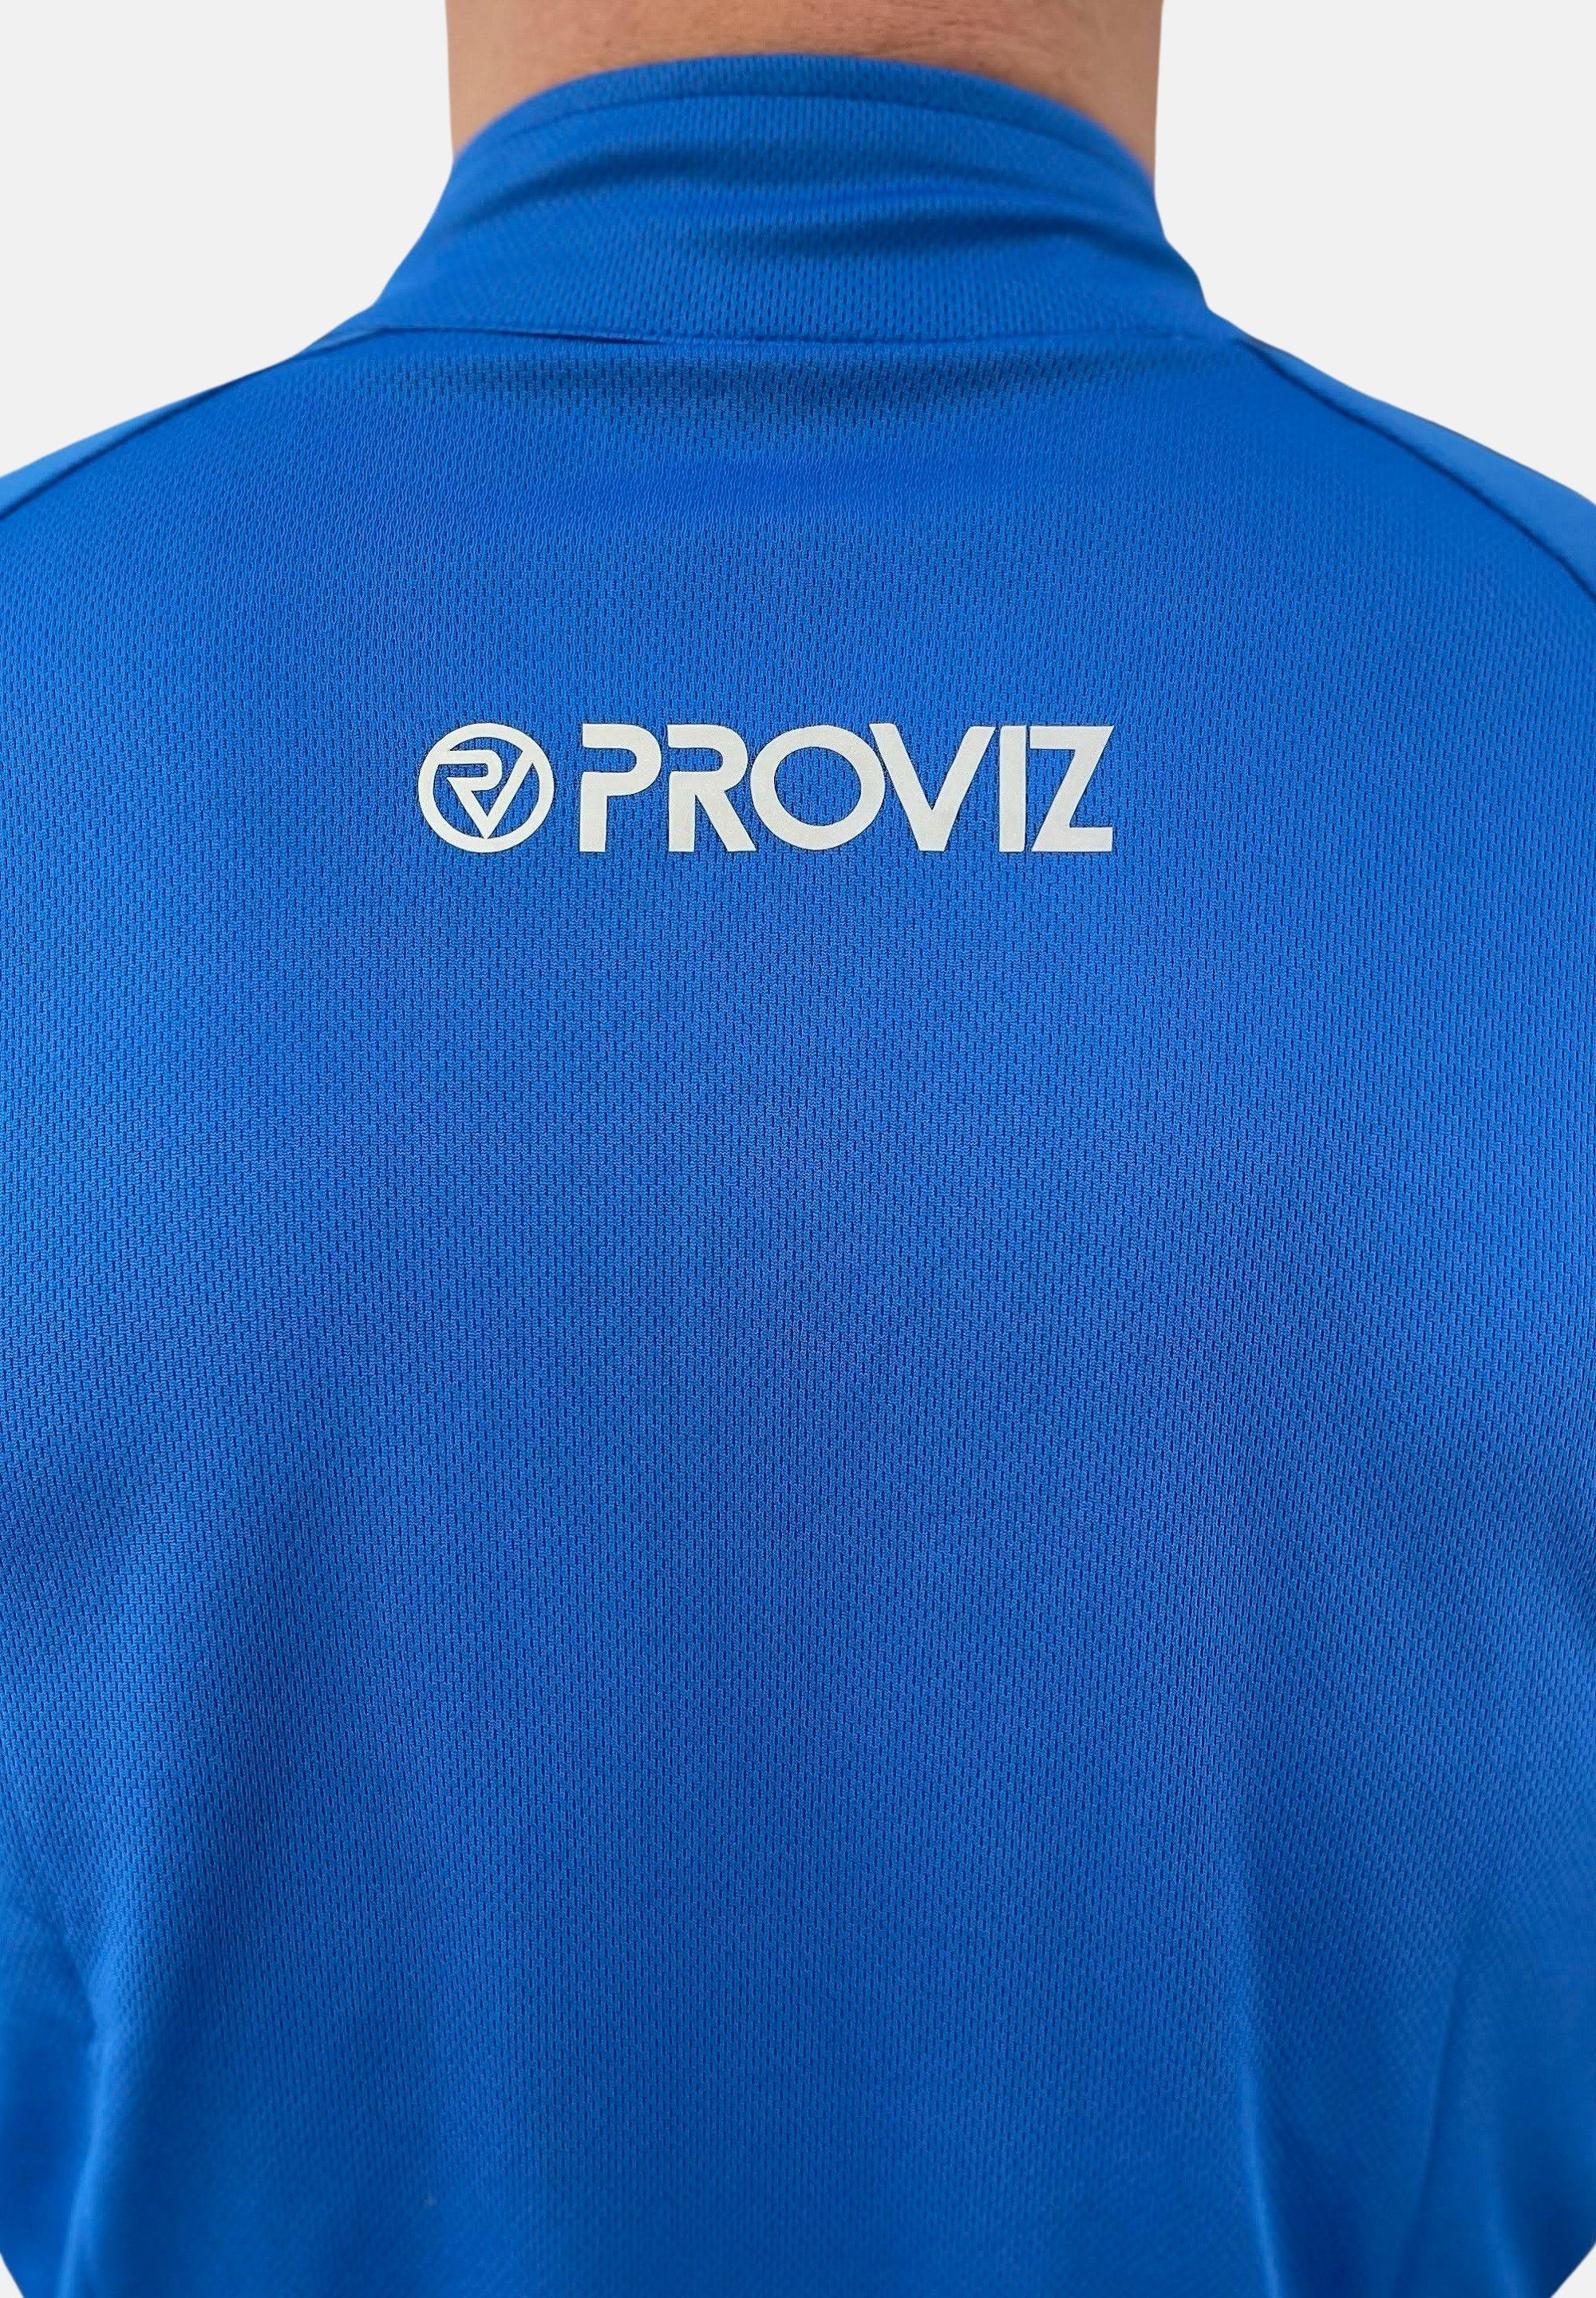 feuchtigkeitsabsorbierend, reflektierend blue ProViz Klassisch Laufshirt Ultraleicht,